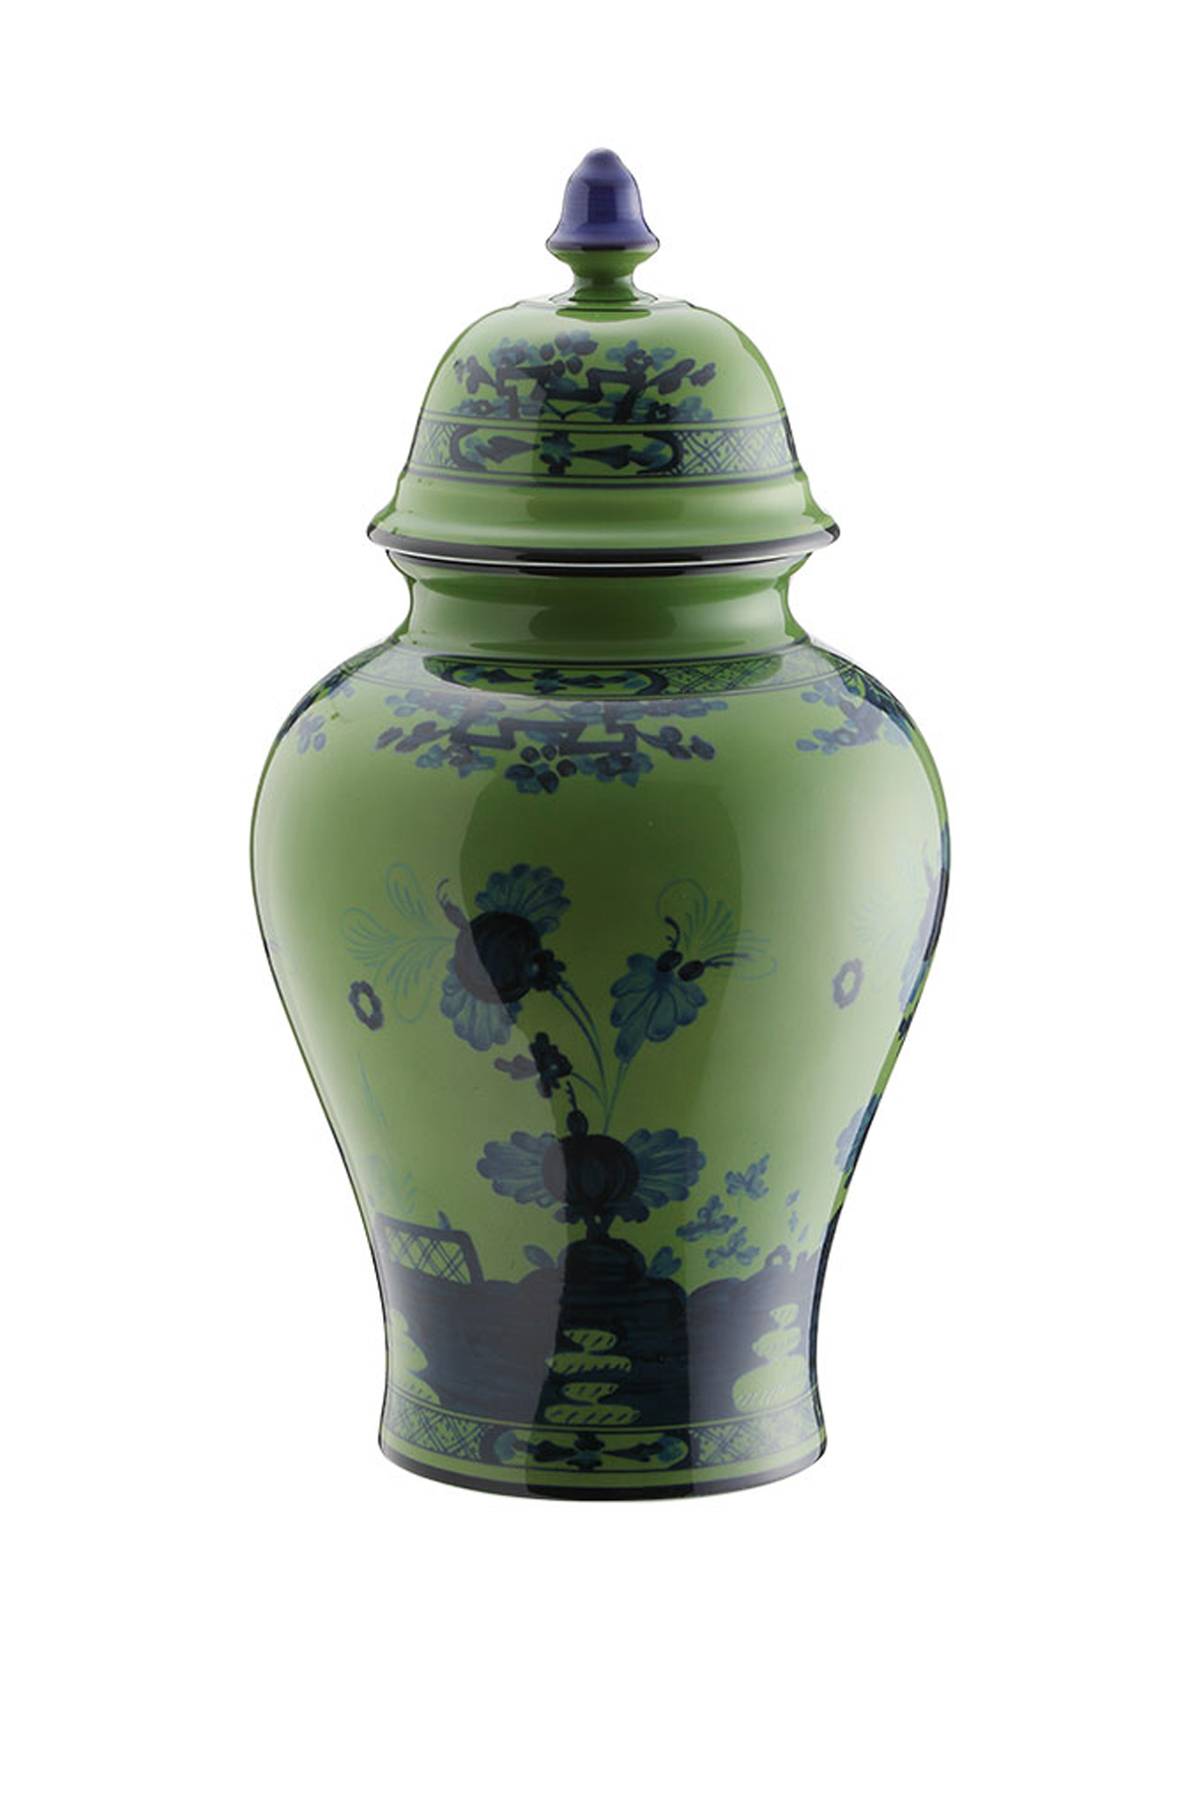 GINORI 1735 GINORI 1735 potiche vase with cover oriente italiano h 31 cm